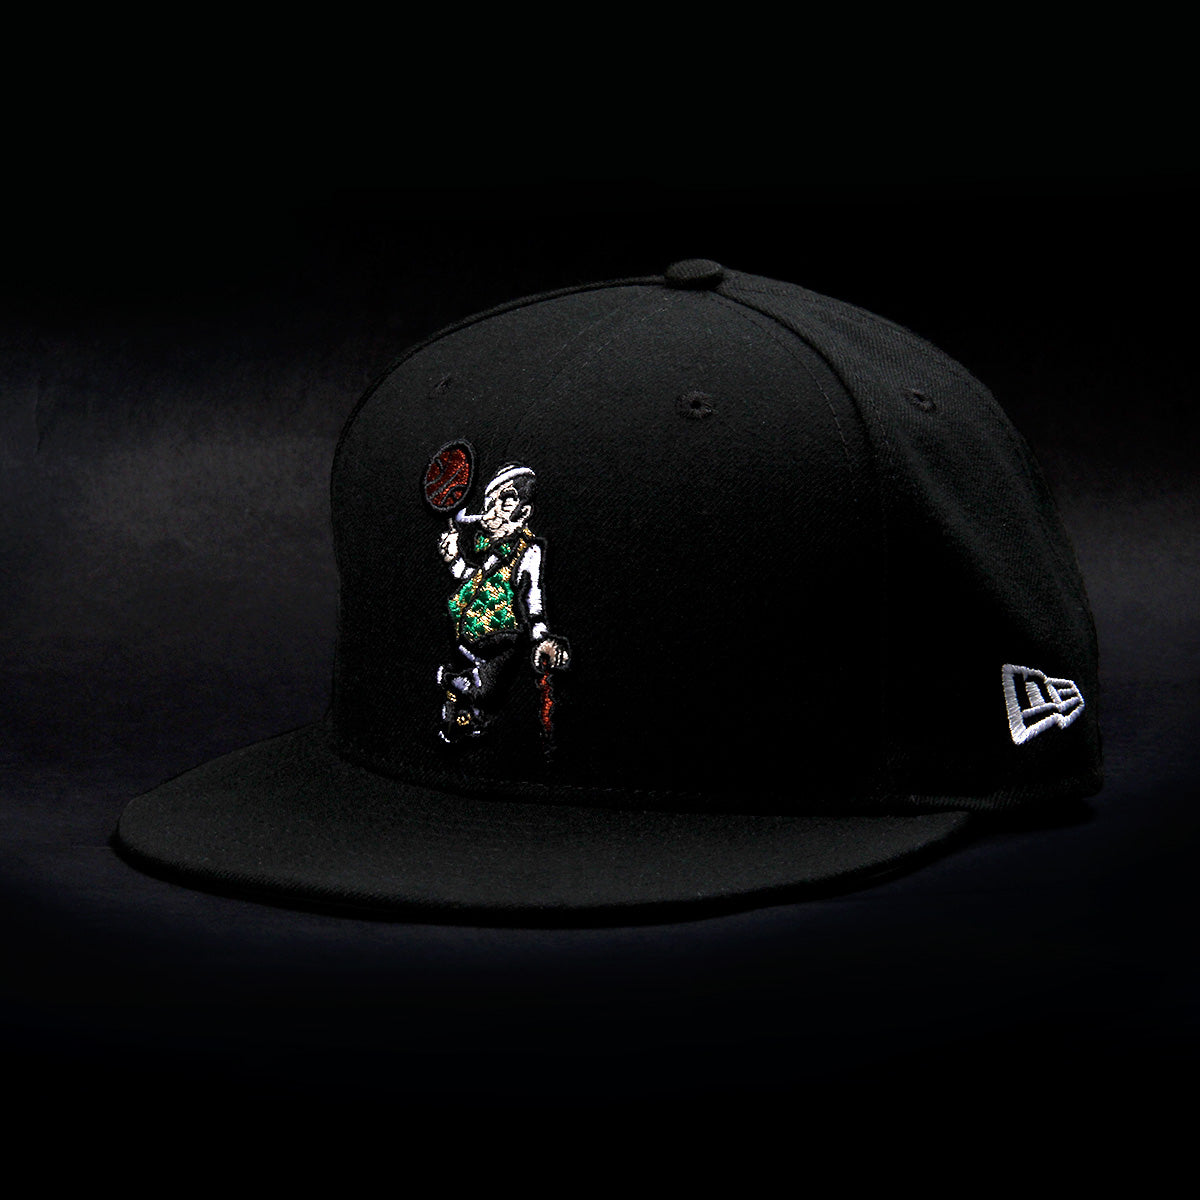 New Era x NBA Tribute Hat - Concepts Intl.